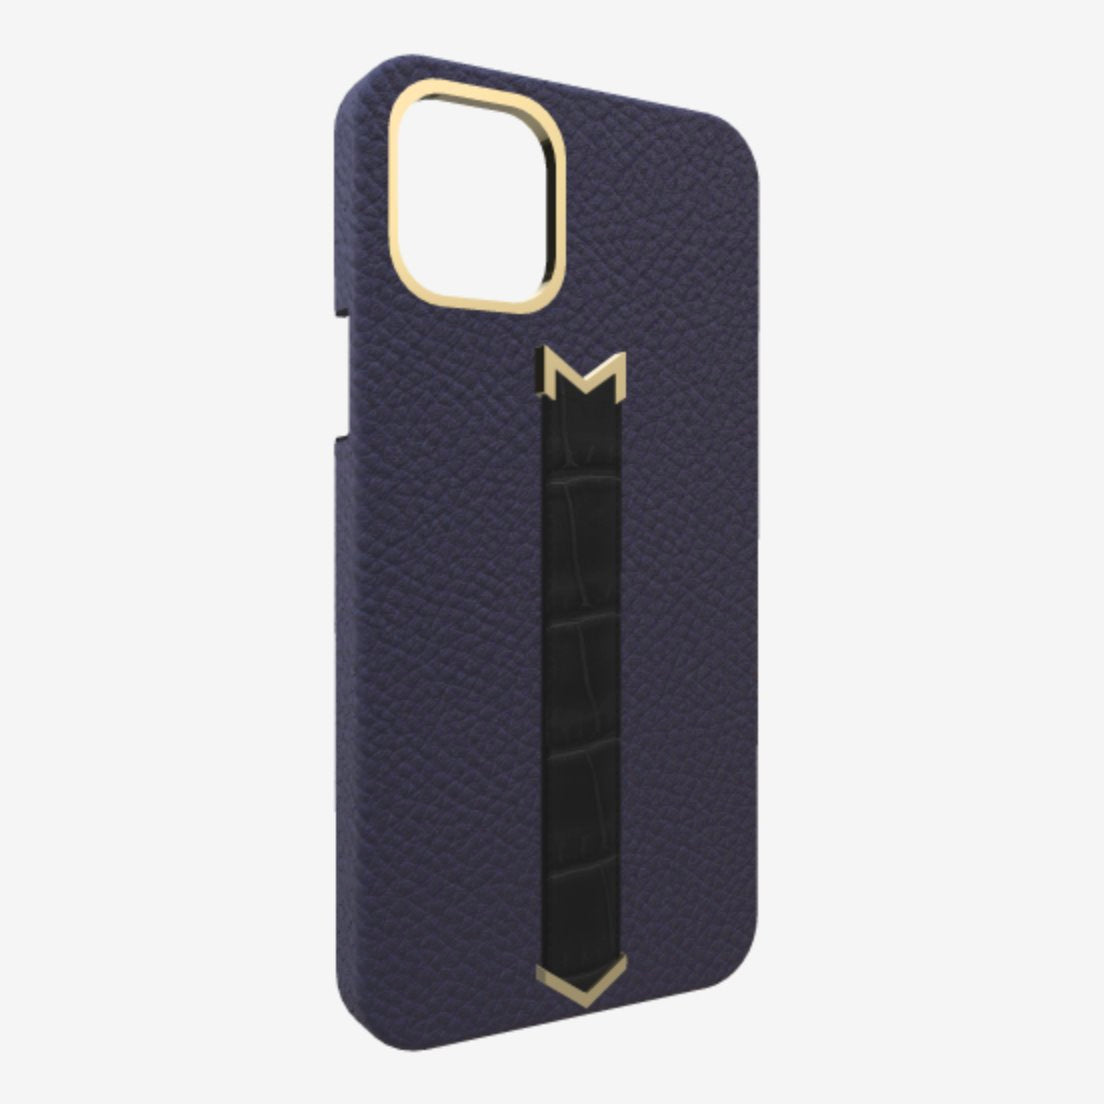 Gold Finger Strap Case for iPhone 13 in Genuine Calfskin and Alligator Navy Blue Bond Black 